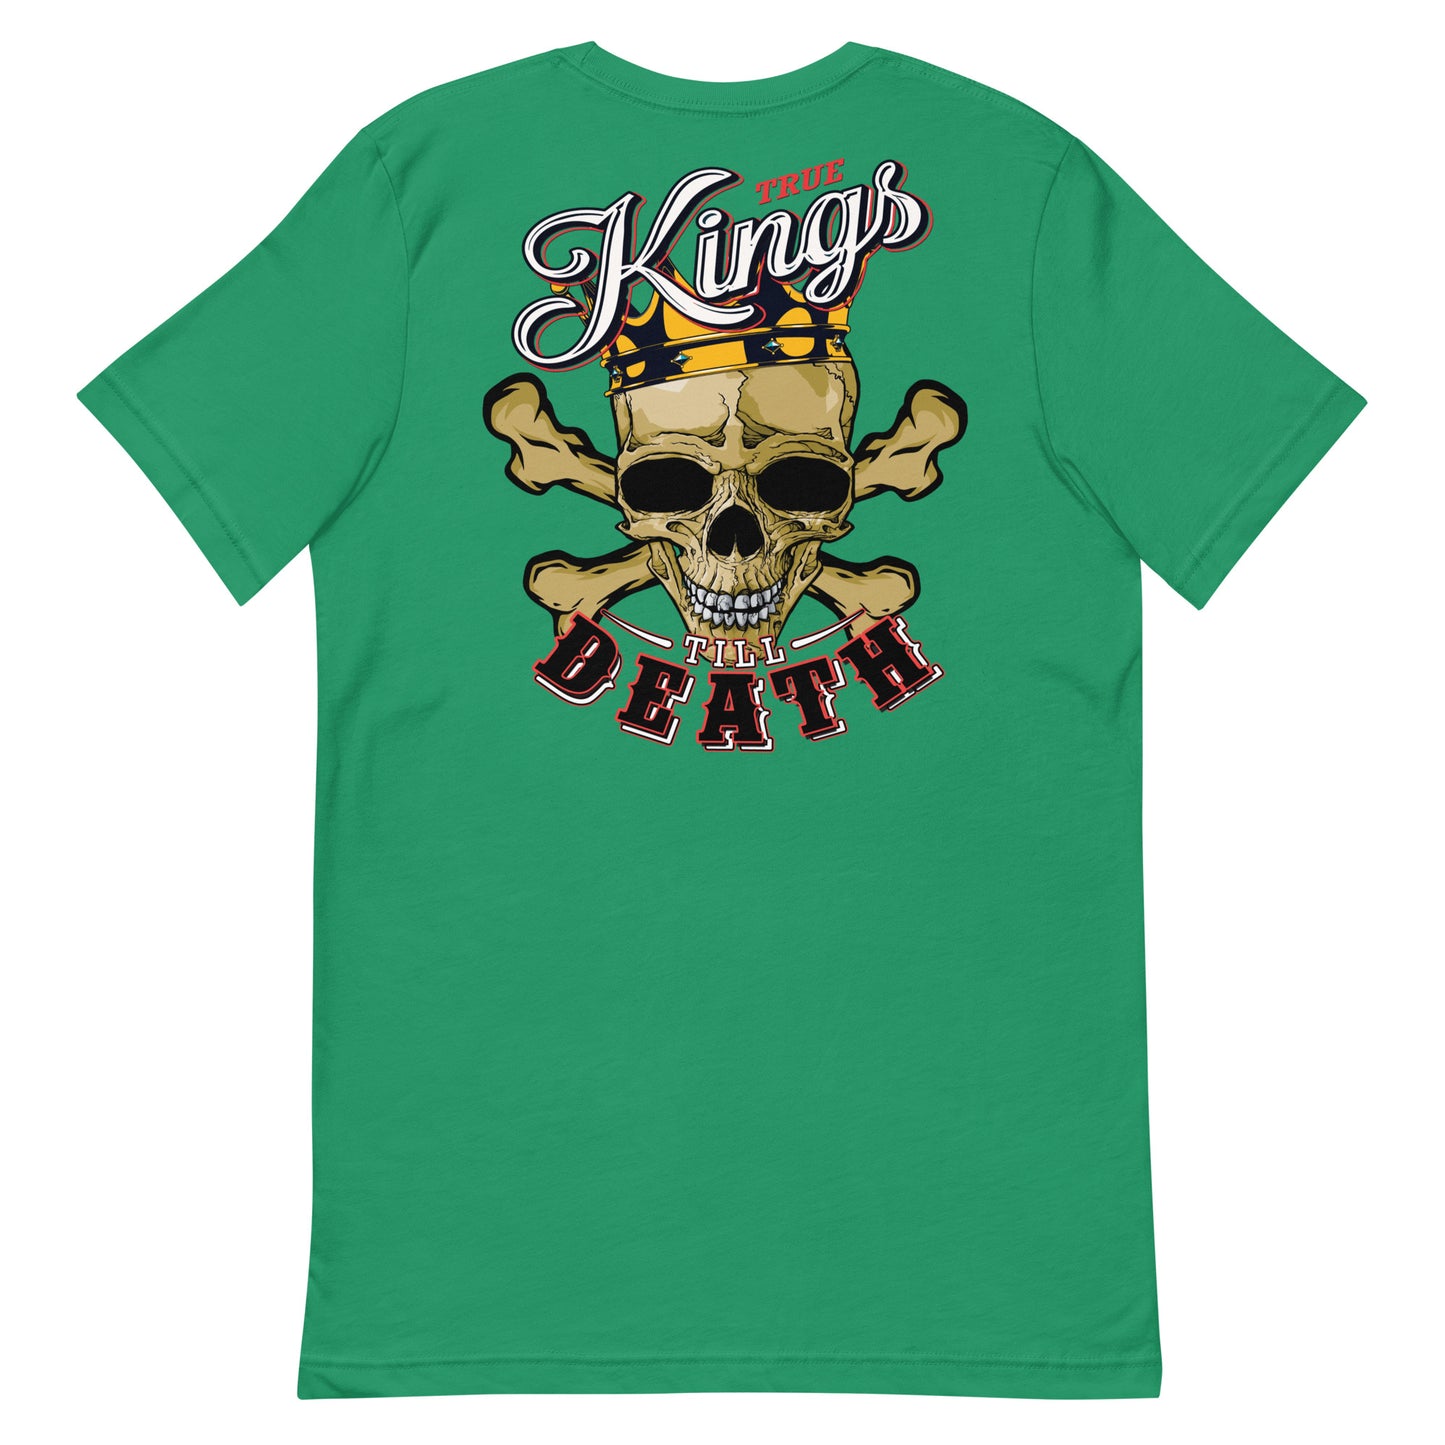 True King Skull Unisex T Shirt